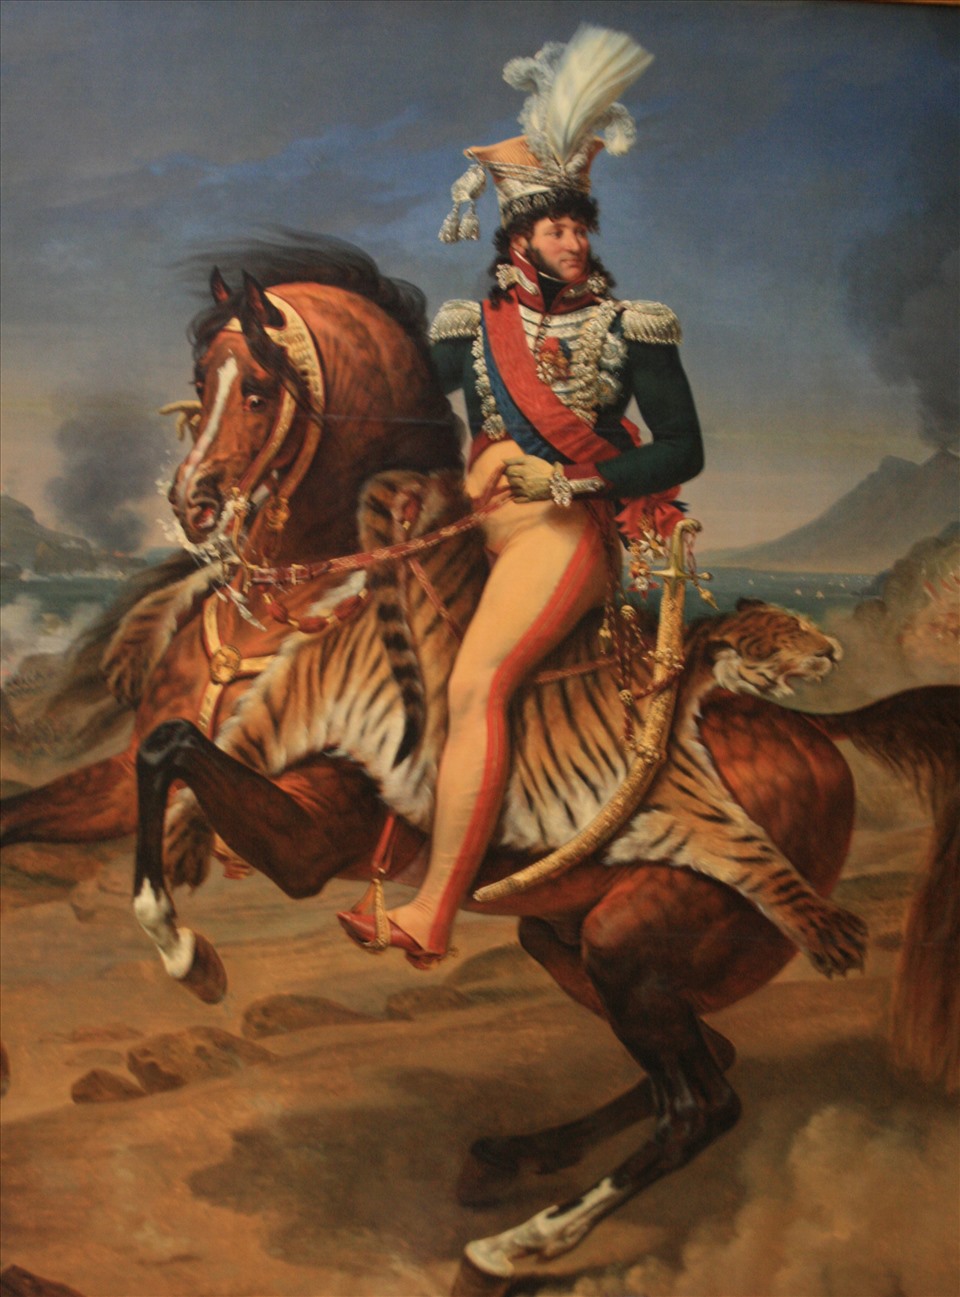 Tranh vẽ Hoàng đế Napoléon Đệ Nhất treo trong lâu đài Fontainebleau. Ảnh: Trần Mạnh Thường